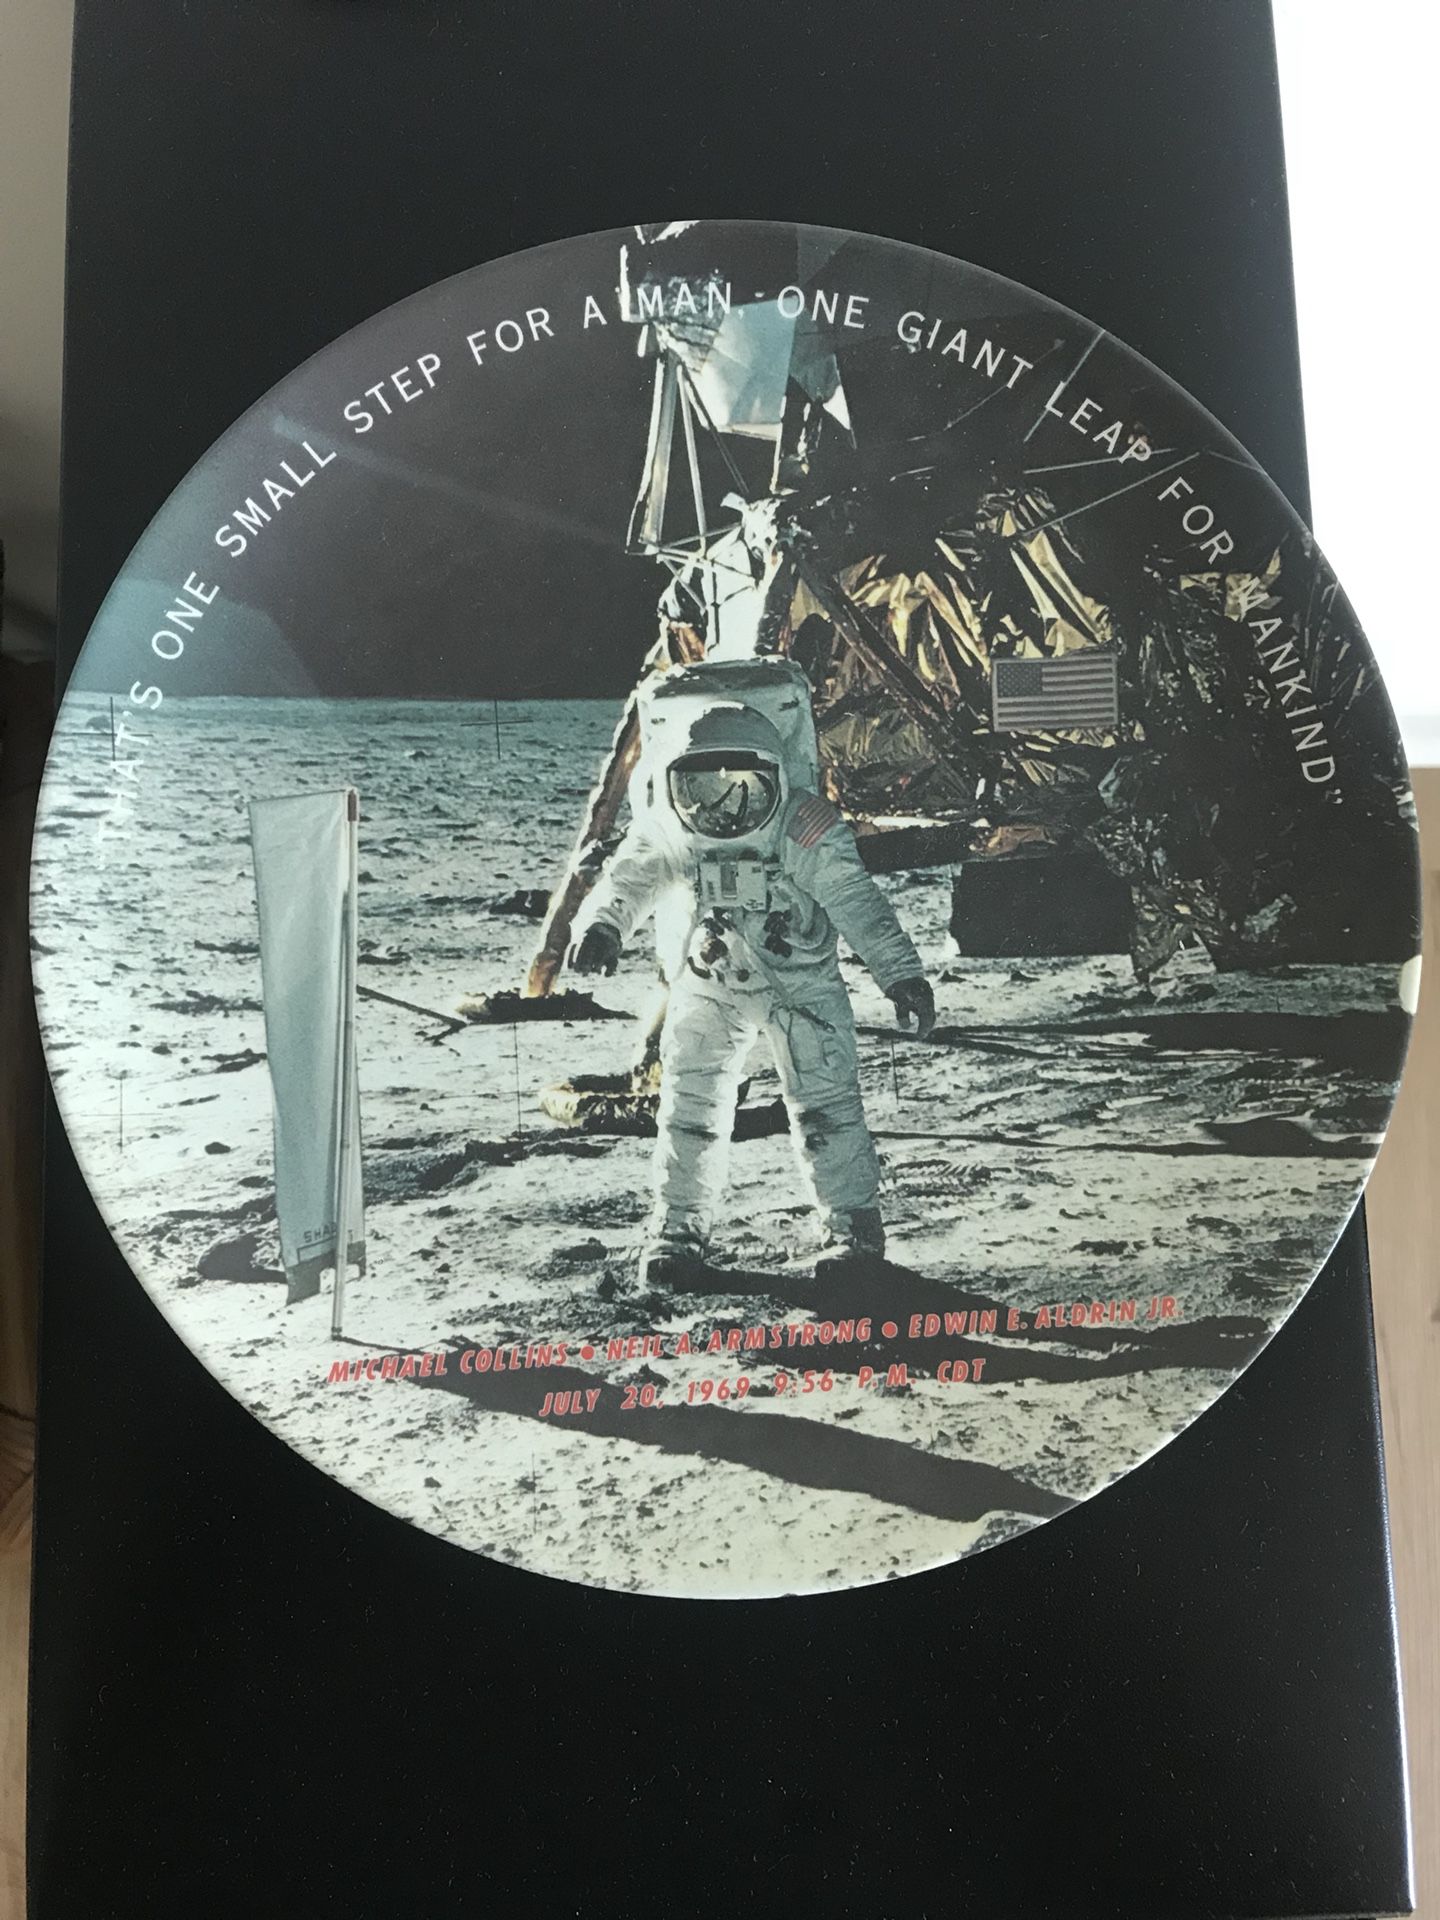 1982 USA moon landing memorabilia